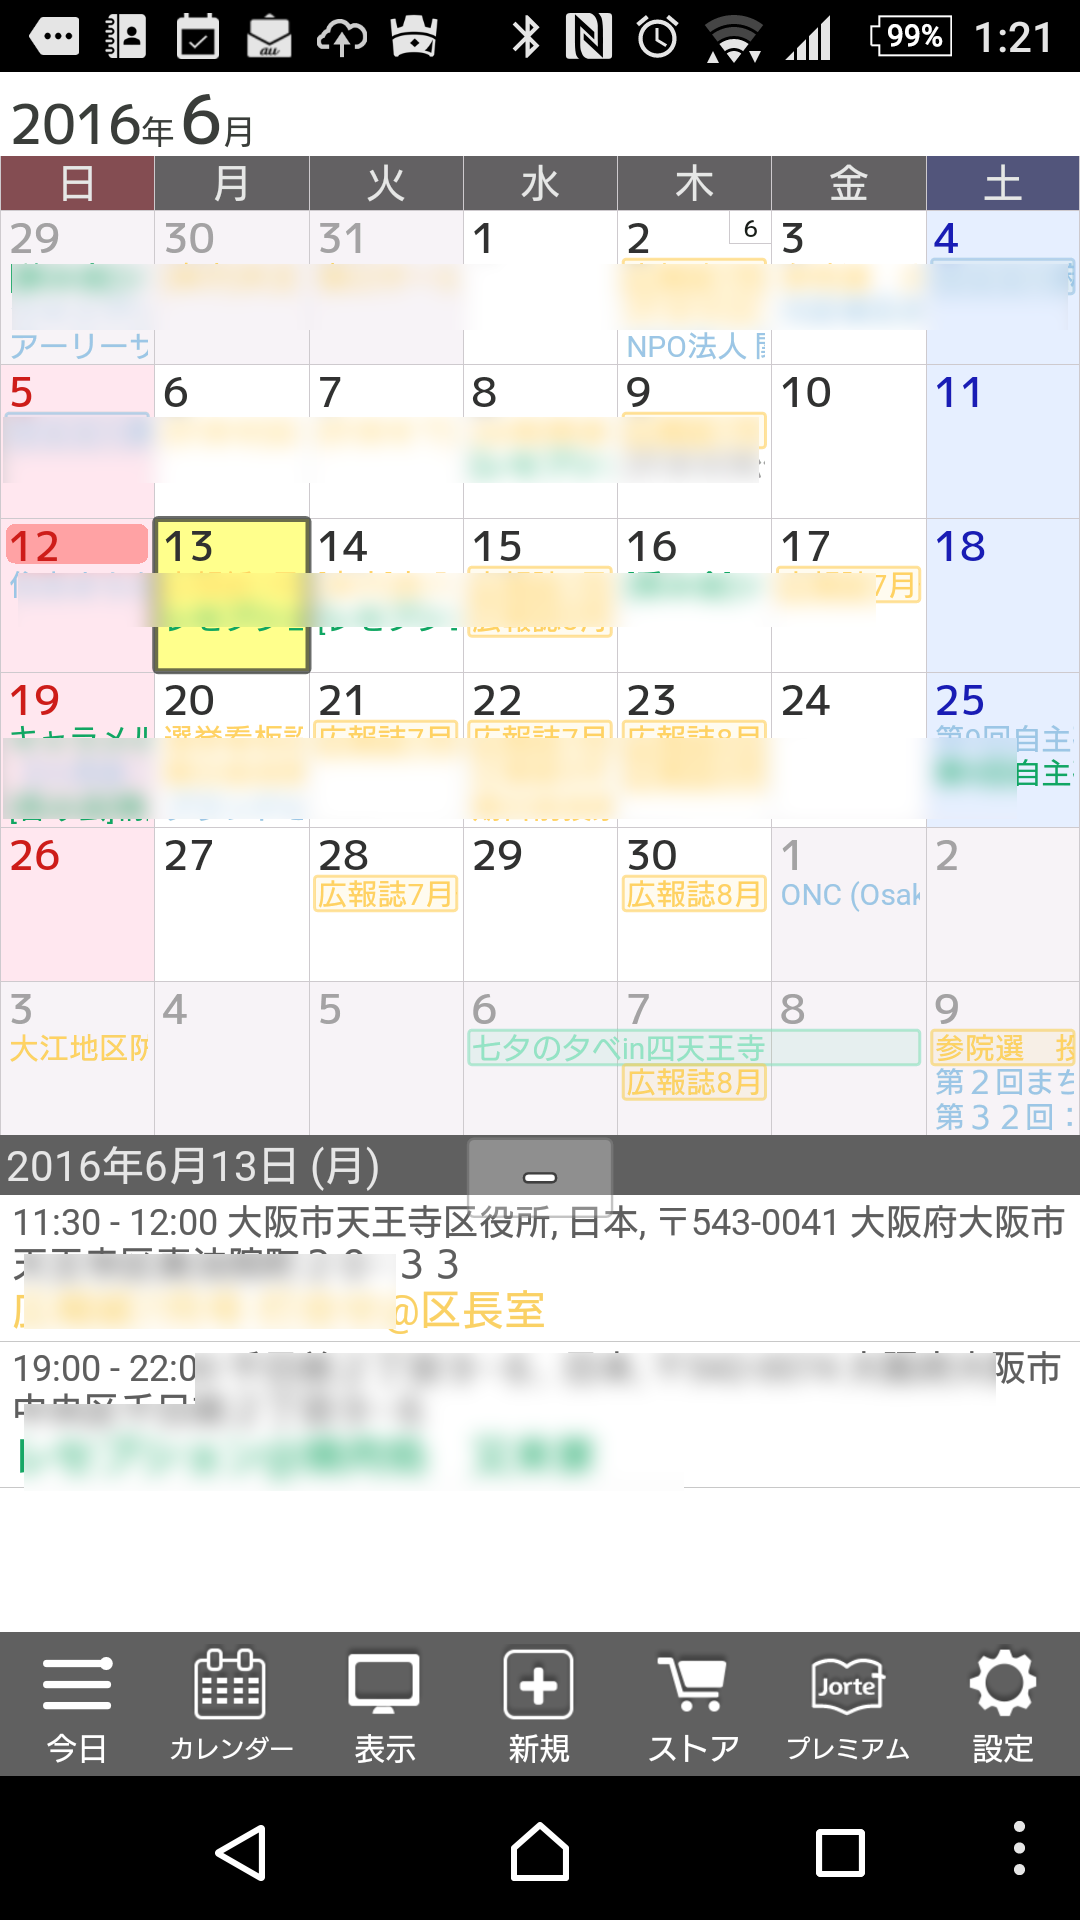 スマホのカレンダーアプリは何がベストか考える 16初夏 Utatane Asia